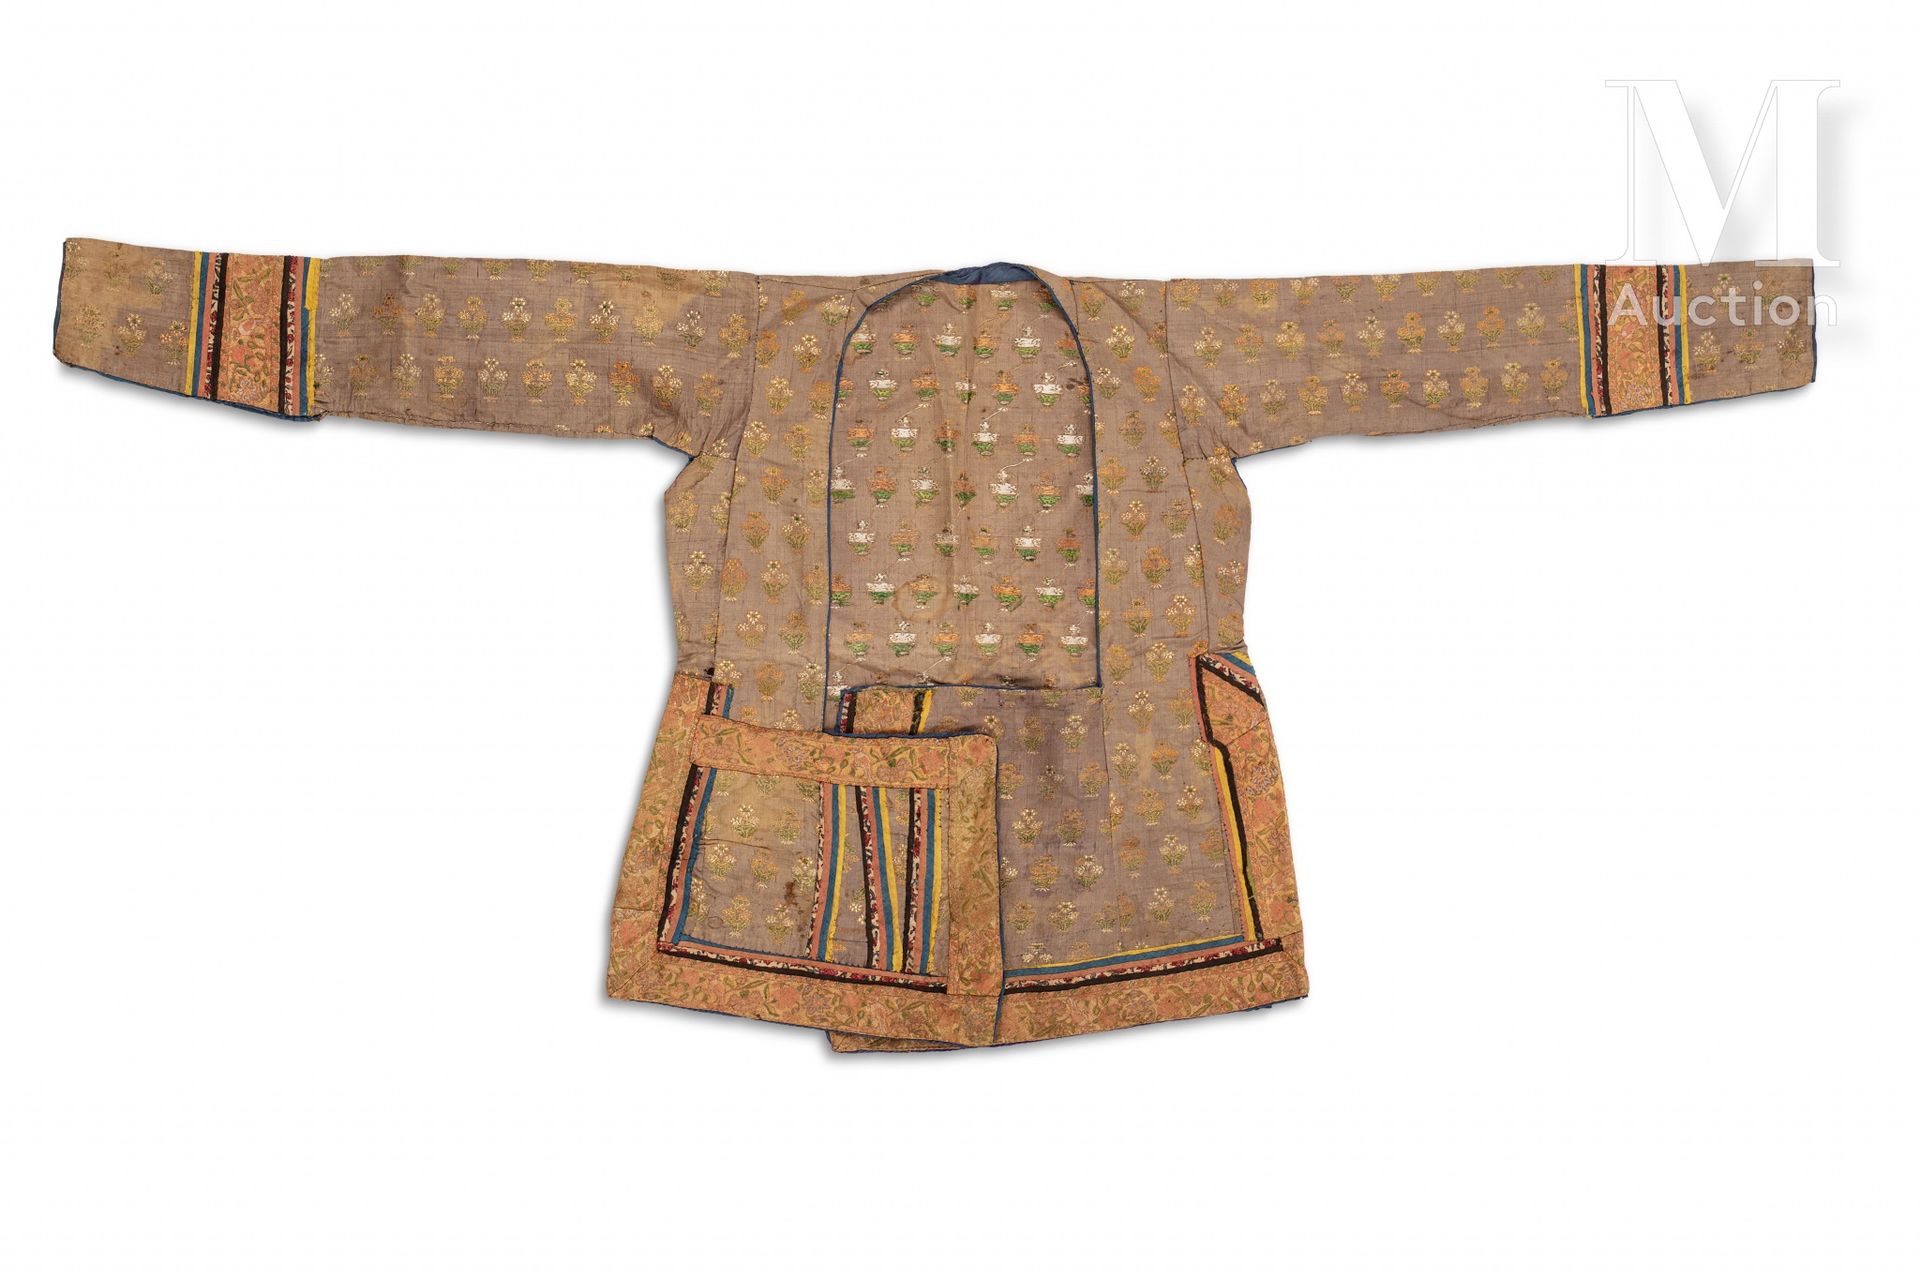 Veste safavide 伊朗，18世纪

绣有绿色、黄色和橙色花朵的灰色七分袖丝绸服装。略有磨损。



一件萨法维时期的波斯丝绸刺绣上衣，伊朗，18世纪